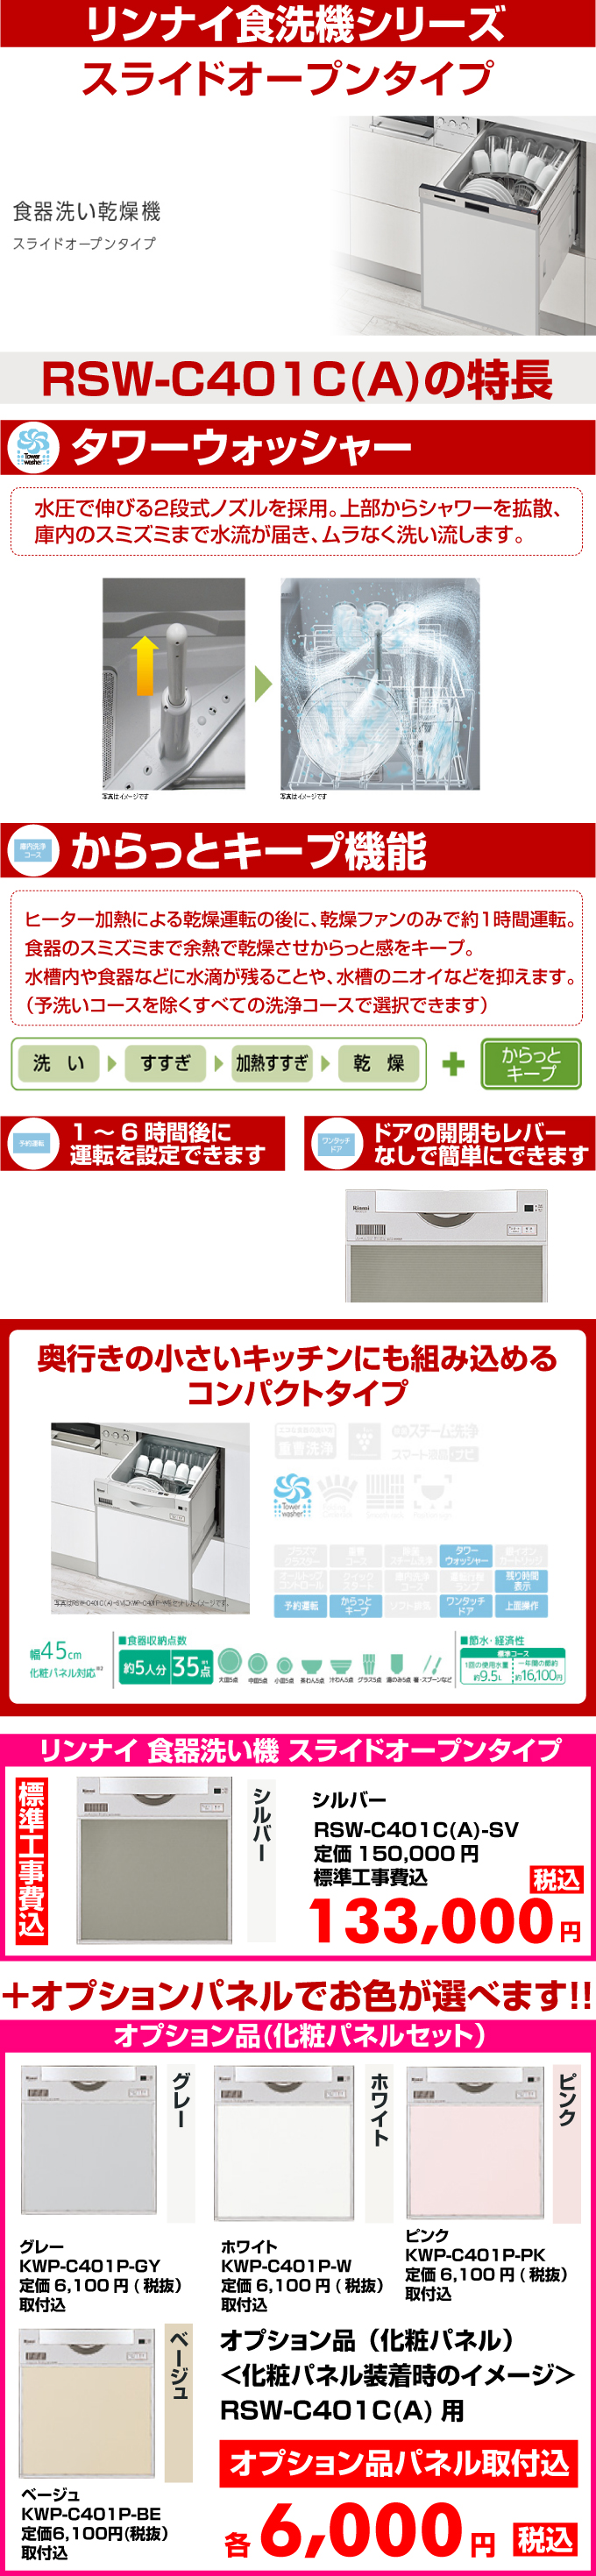 リンナイ食器洗い機 スライドオープンタイプ RSW-401C(A)